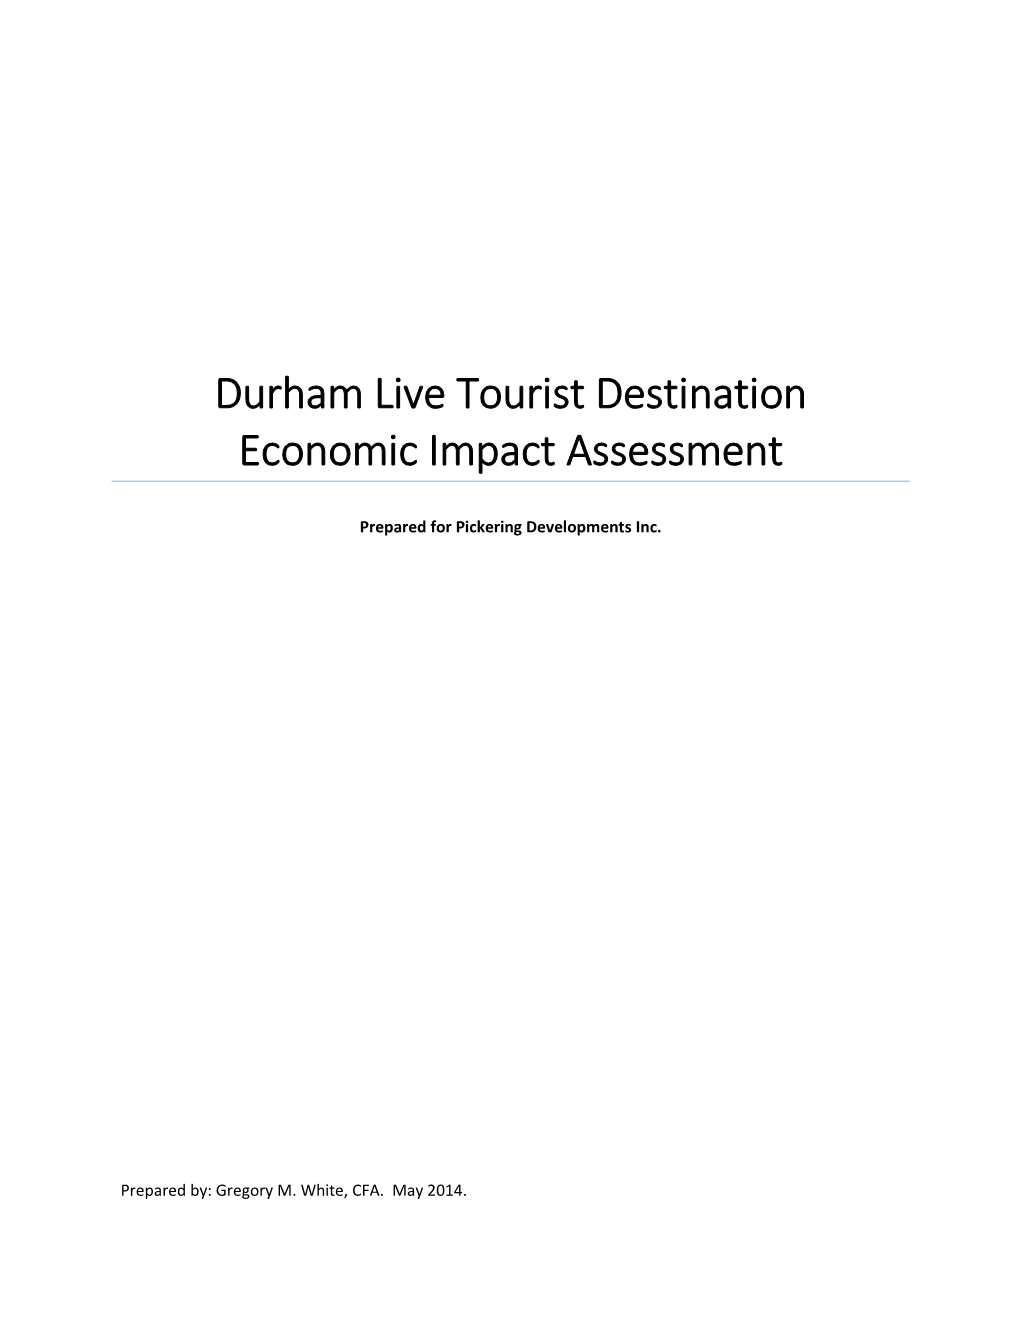 Durham Live Tourist Destination Economic Impact Assessment